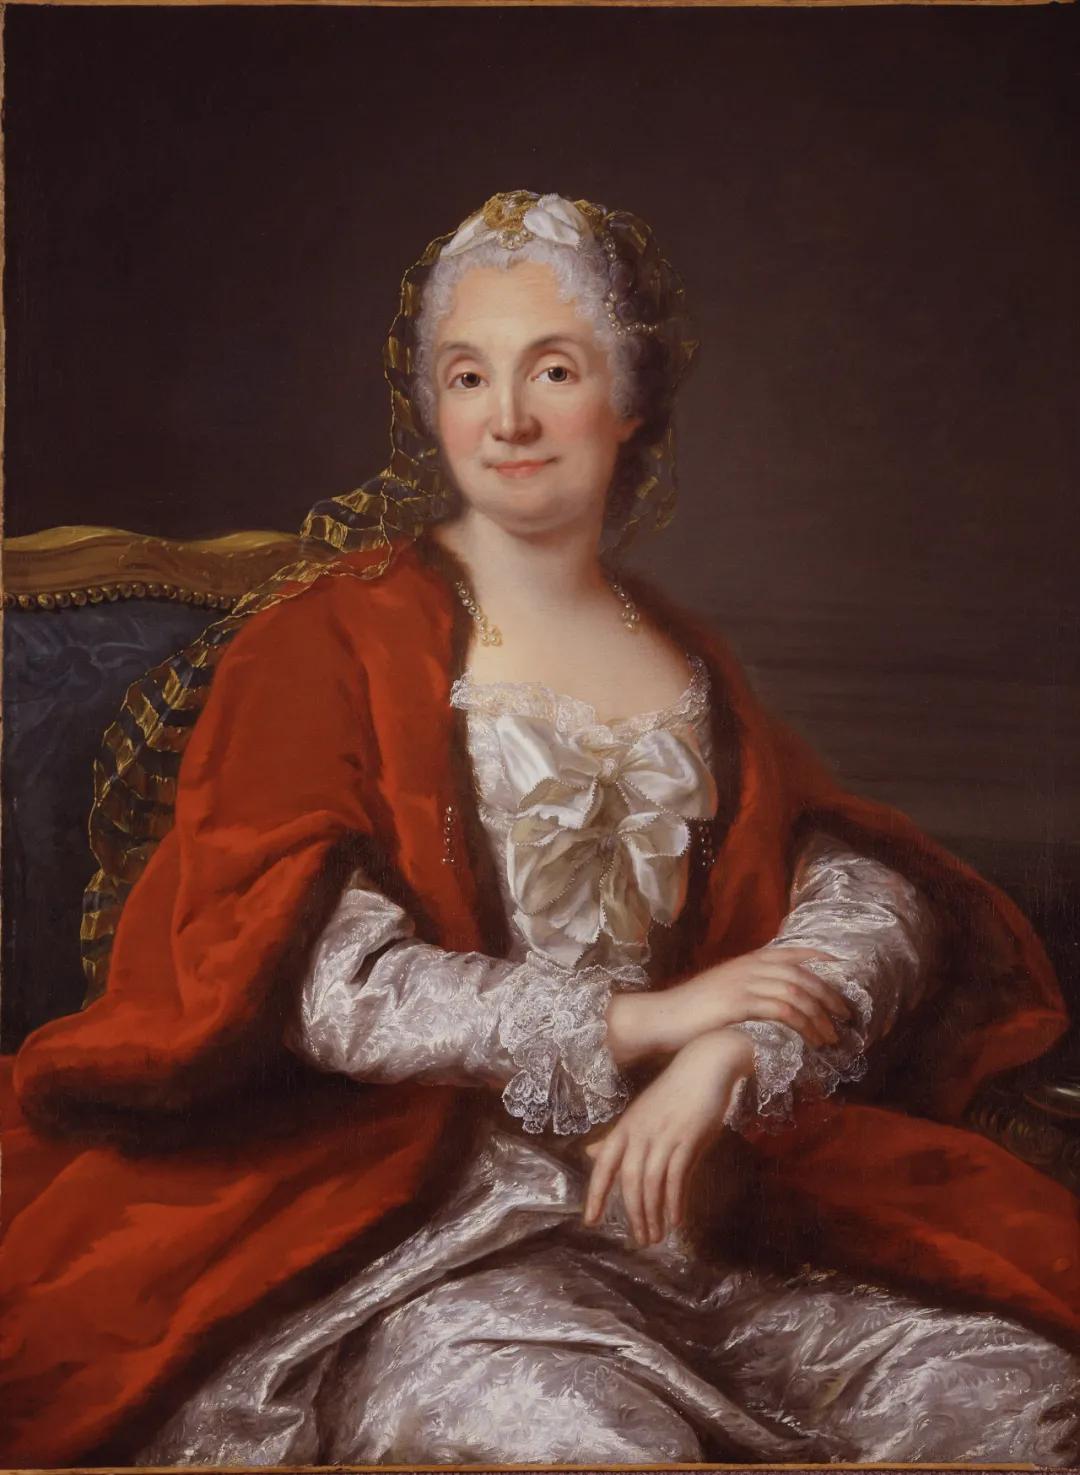 法国第一个著名沙龙主人朗布依埃侯爵夫人(marquise de rambouillet